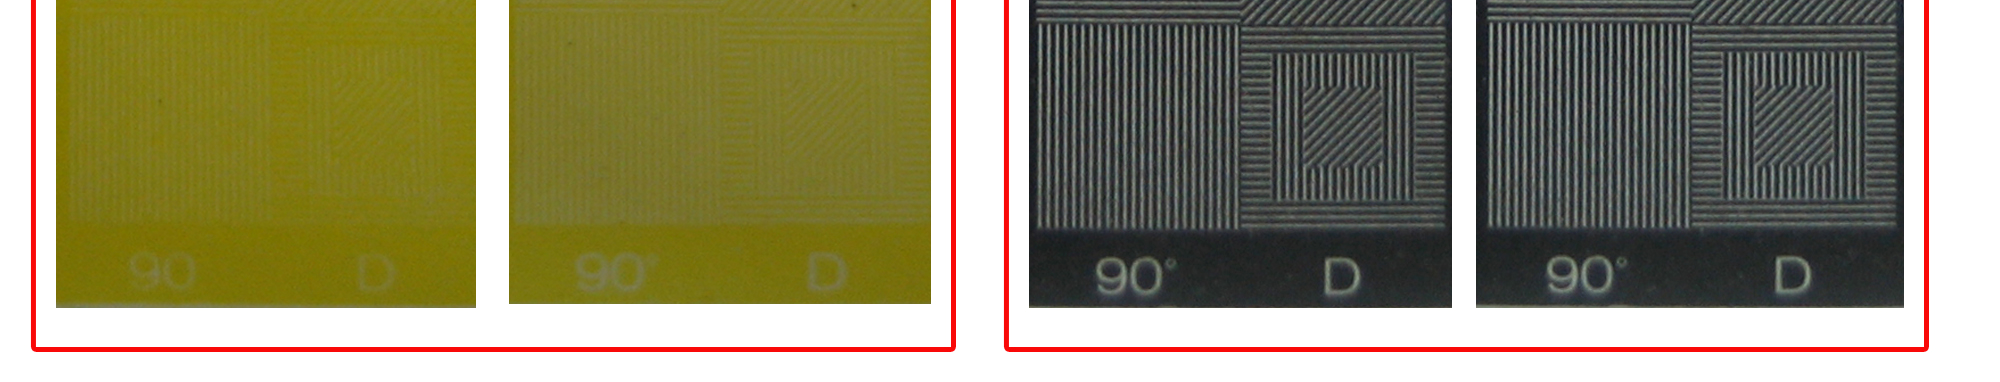 Resim 3. Çiftleme kayma olan ve olmayan baskıların CMYK kontrol şeridindeki patchlarının görüntüleri Tablo1.